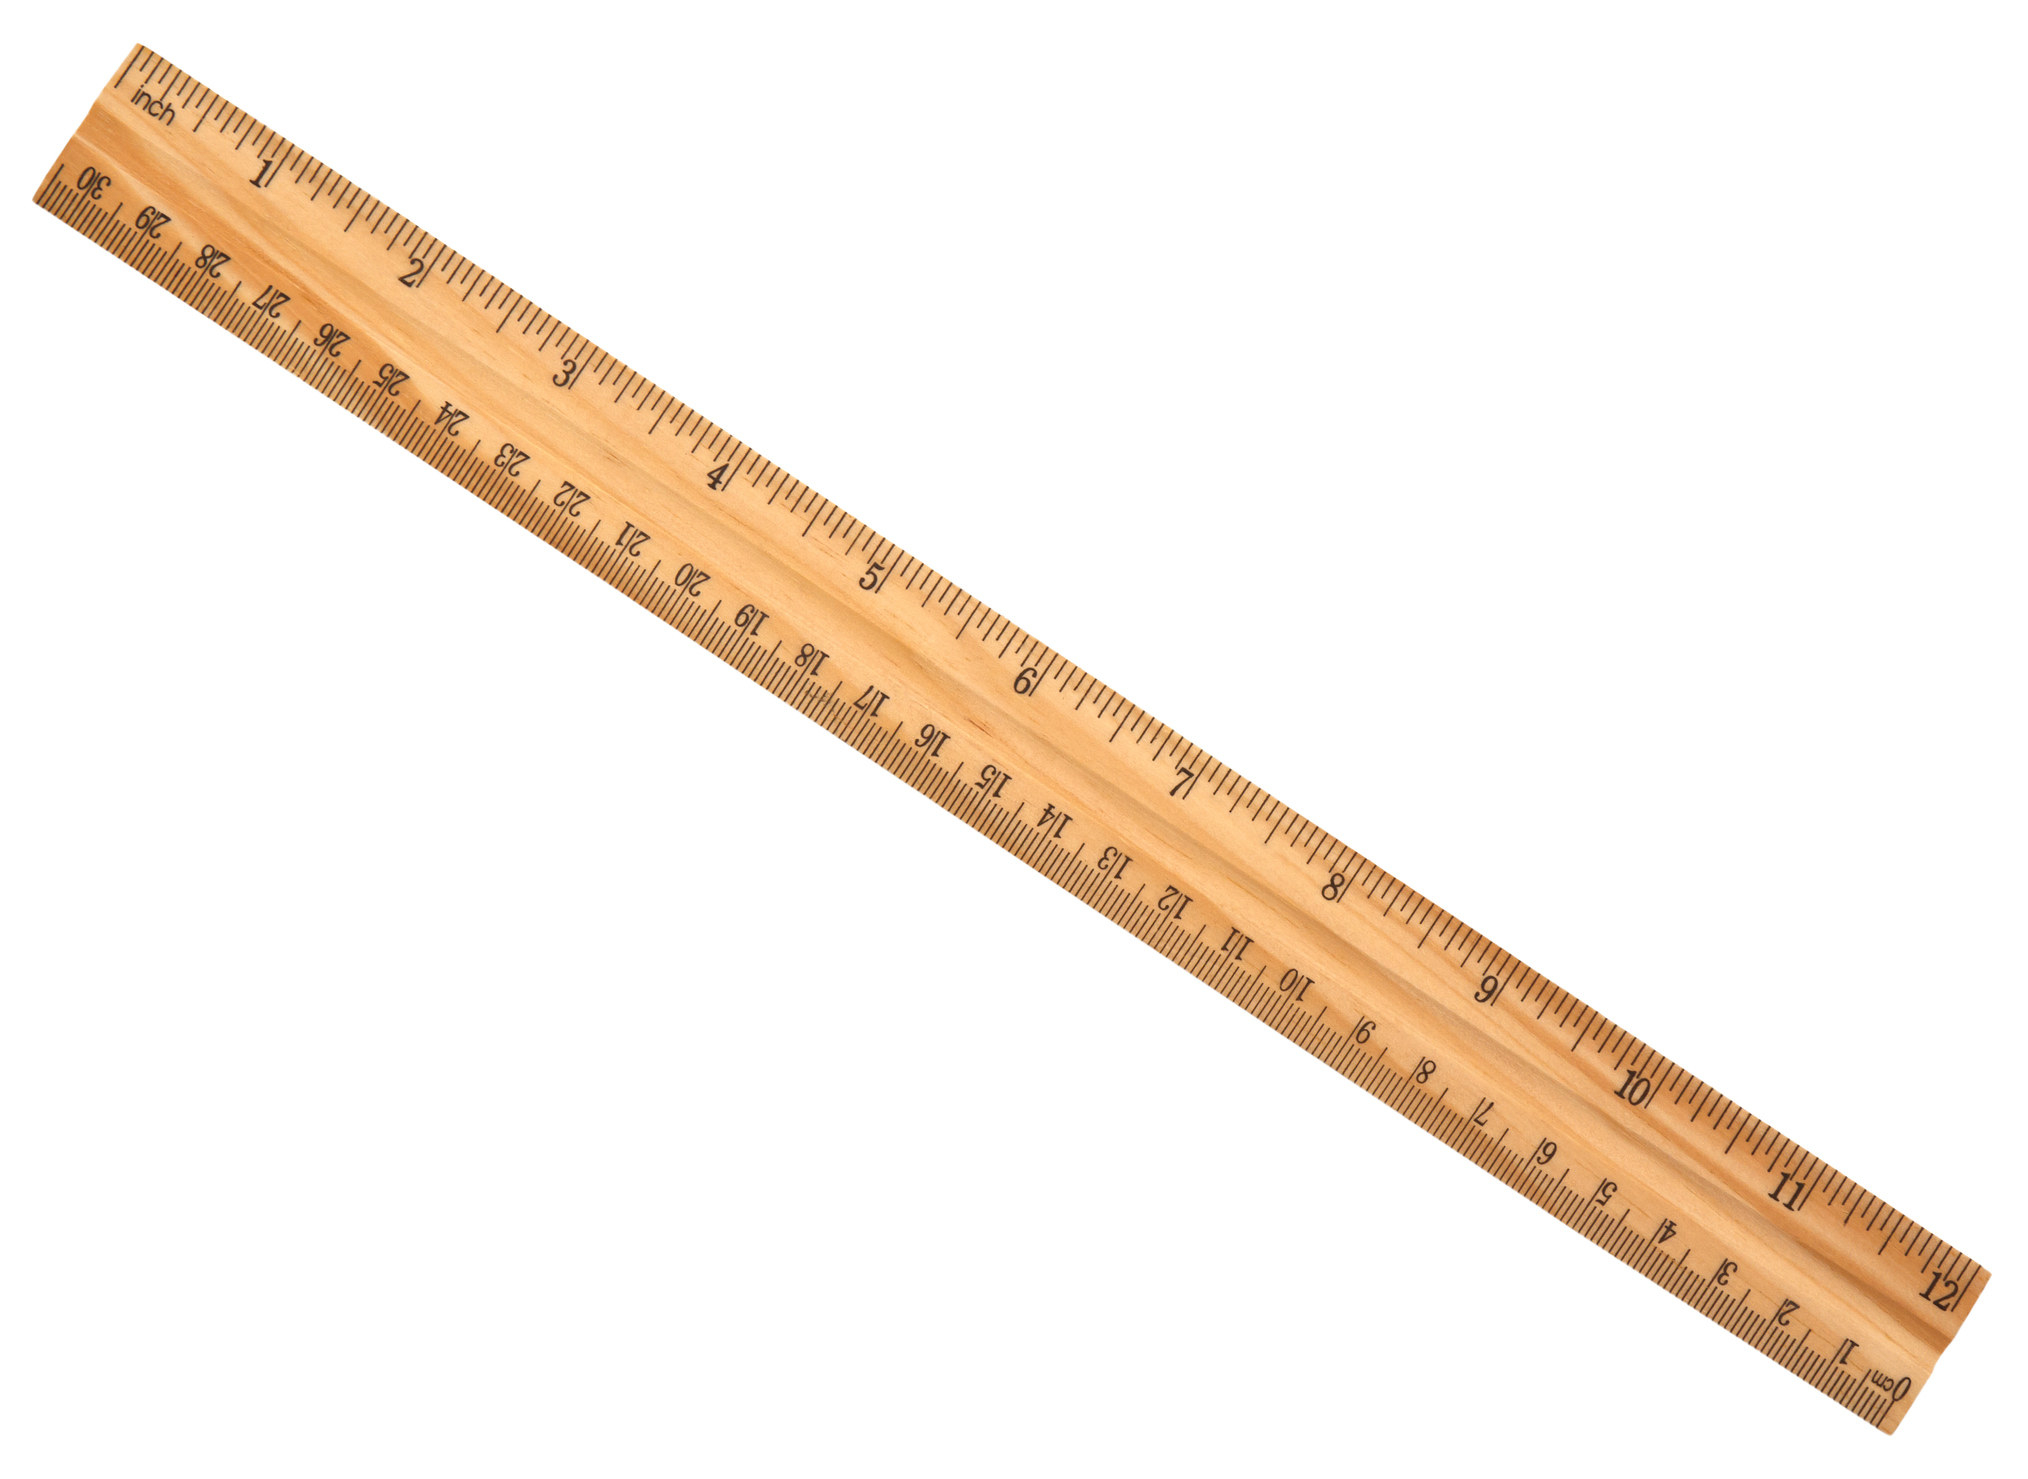 A wooden ruler